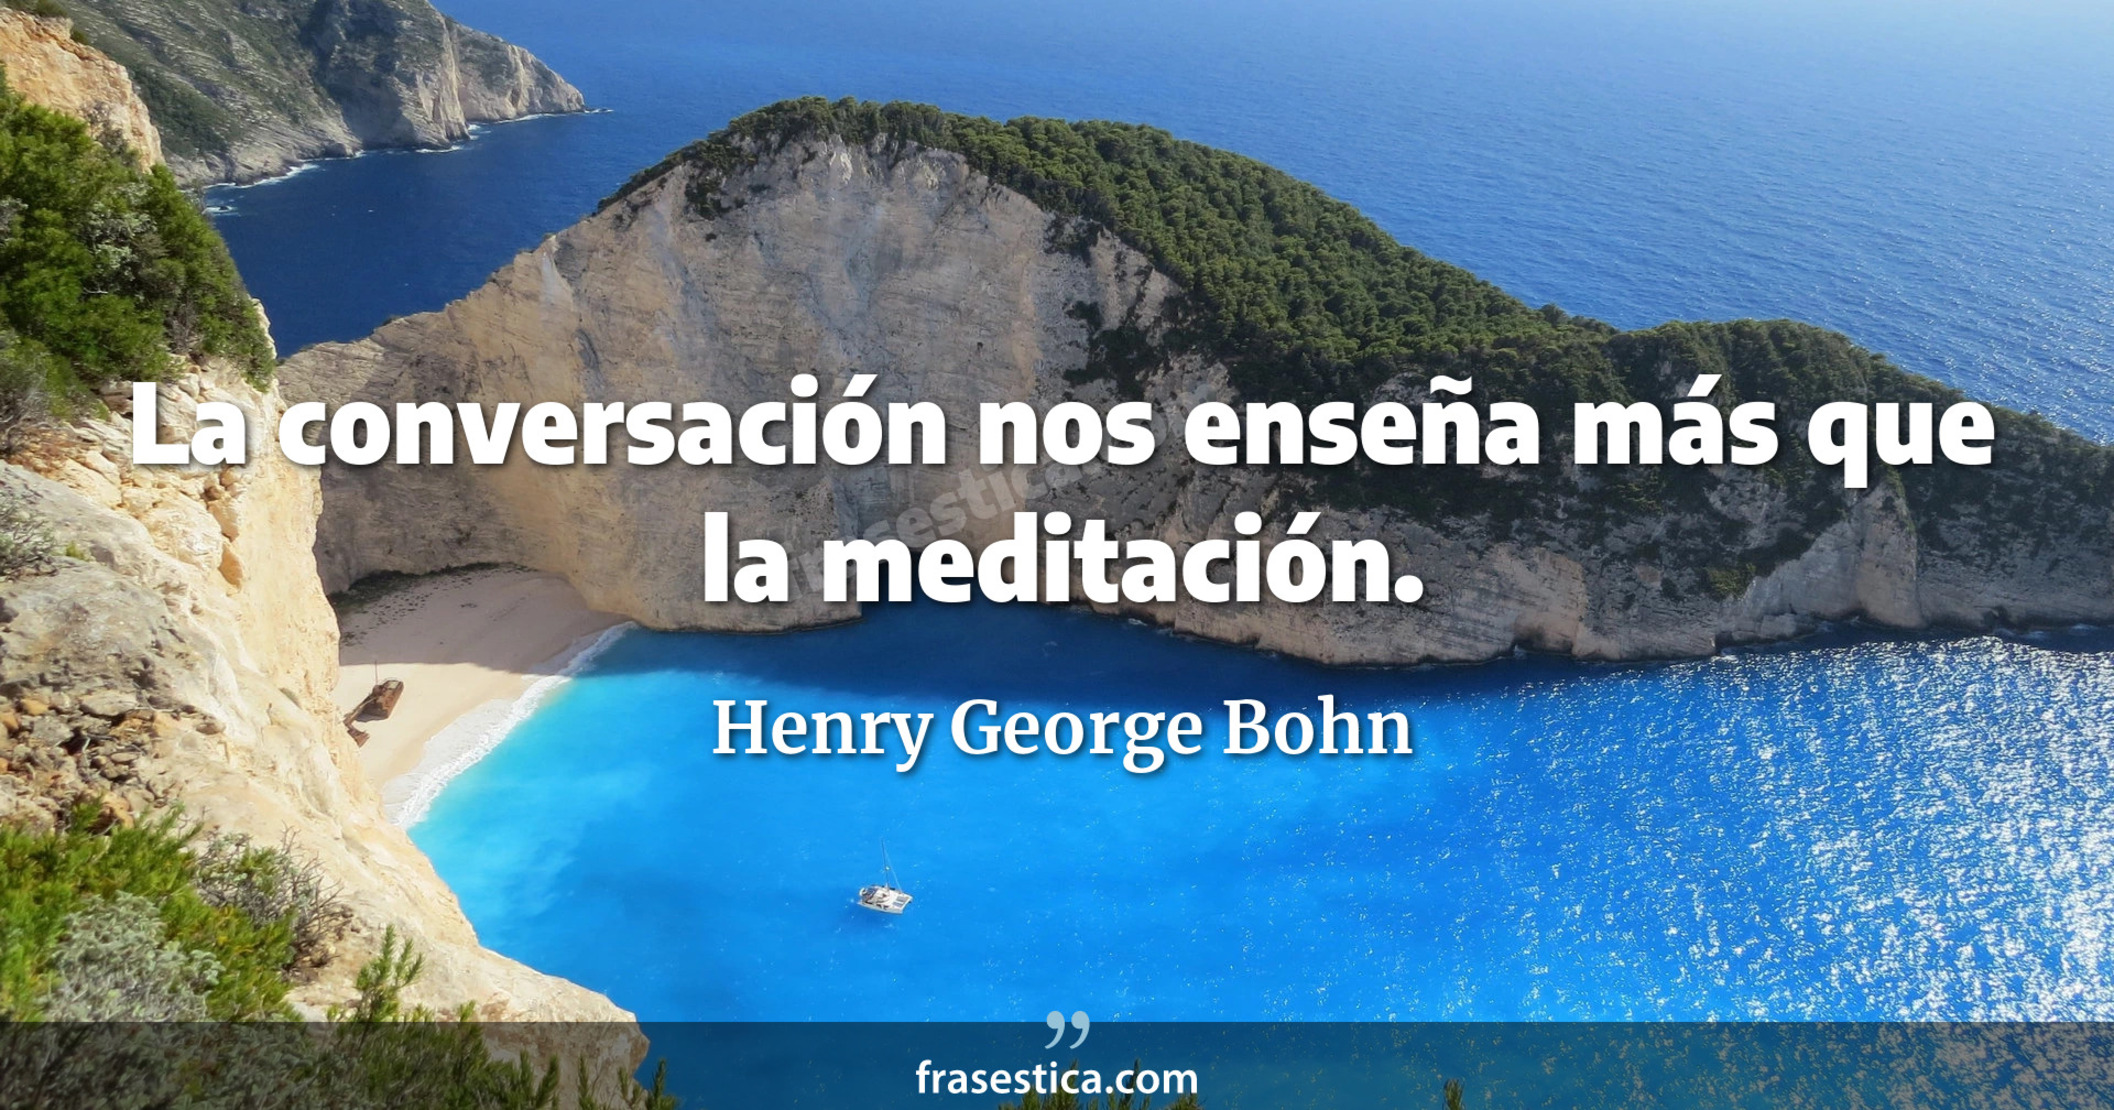 La conversación nos enseña más que la meditación. - Henry George Bohn